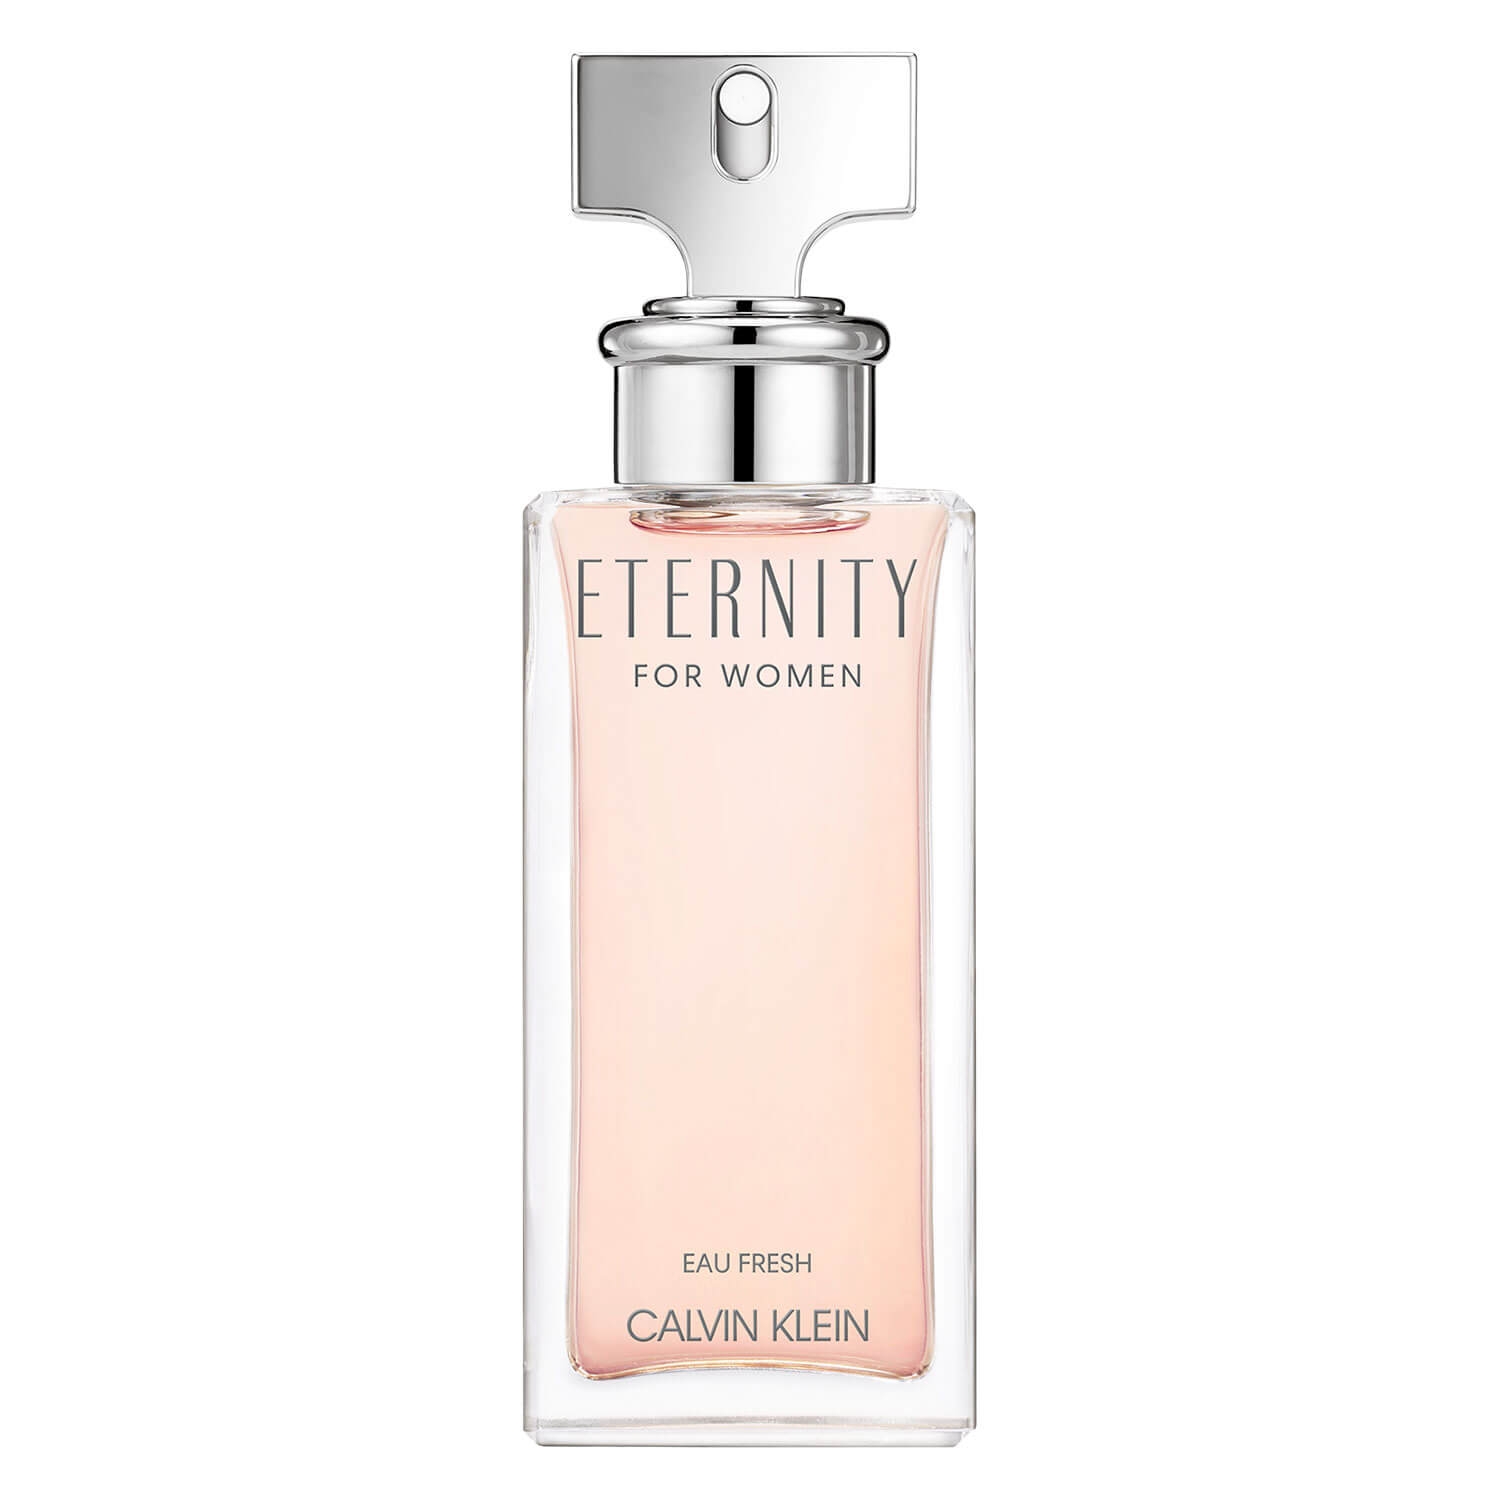 Product image from Eternity - For Women Eau Fresh Eau de Parfum